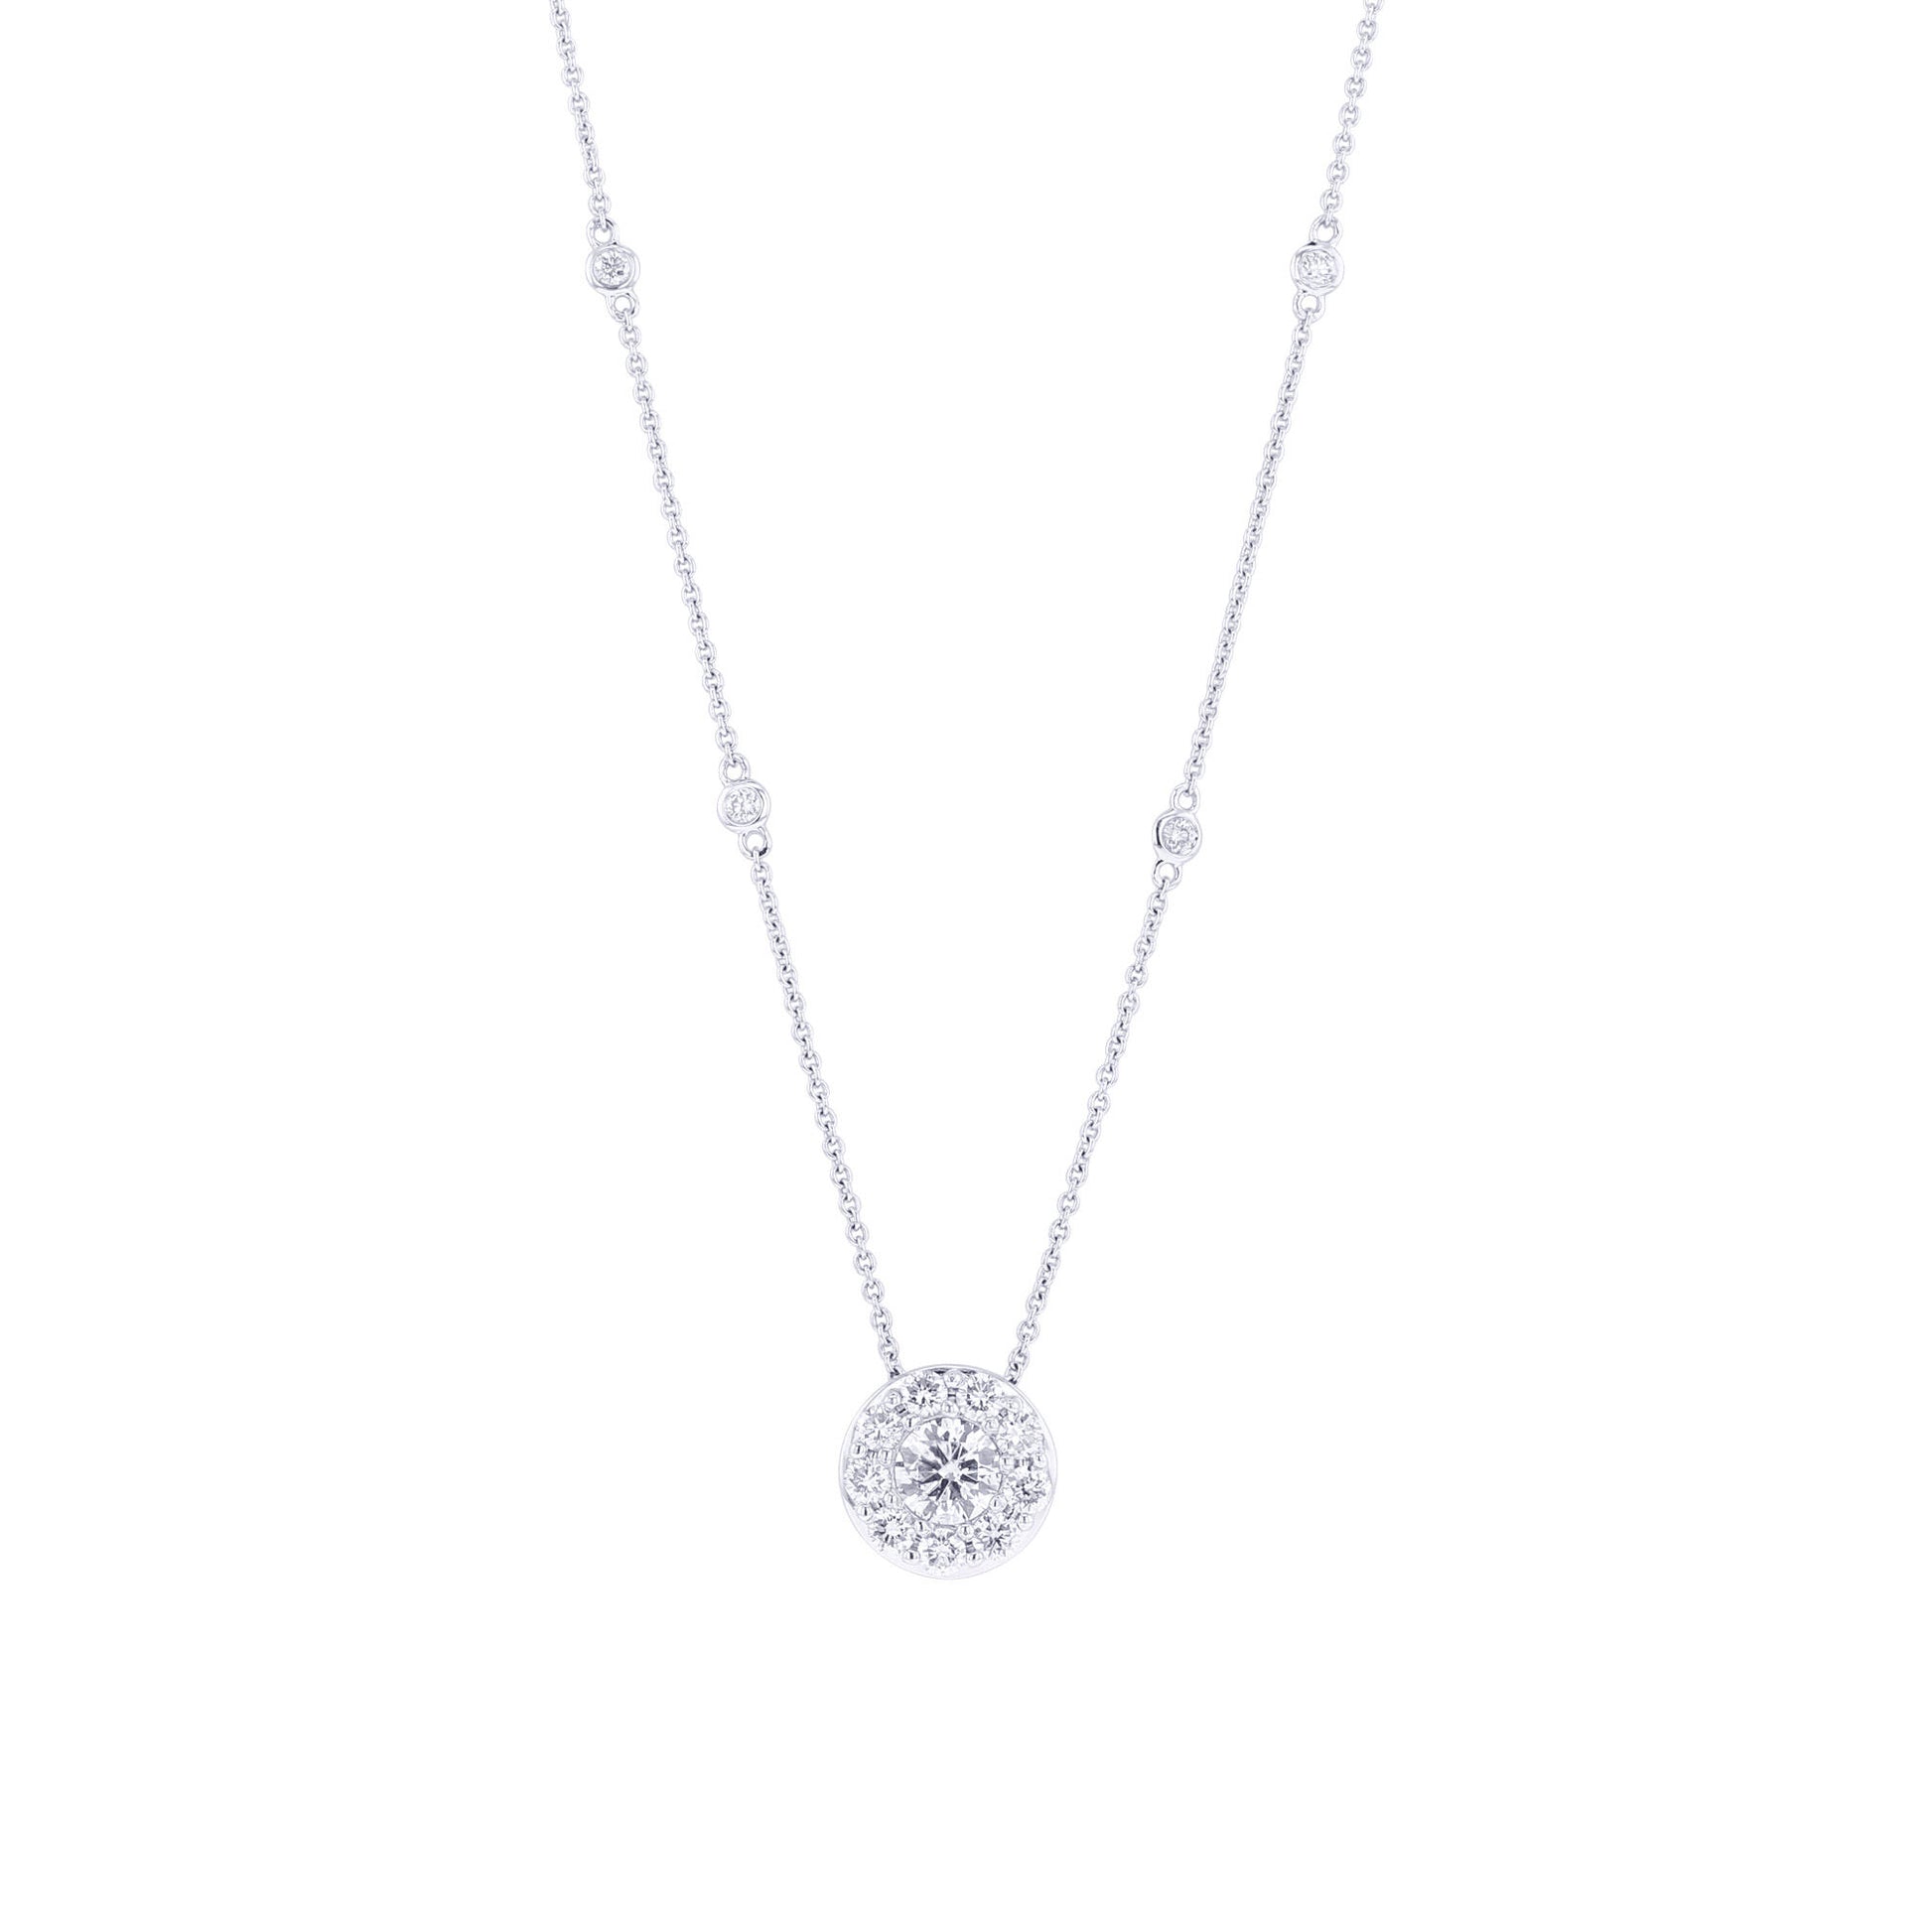 Cairo Halo Diamond Necklace